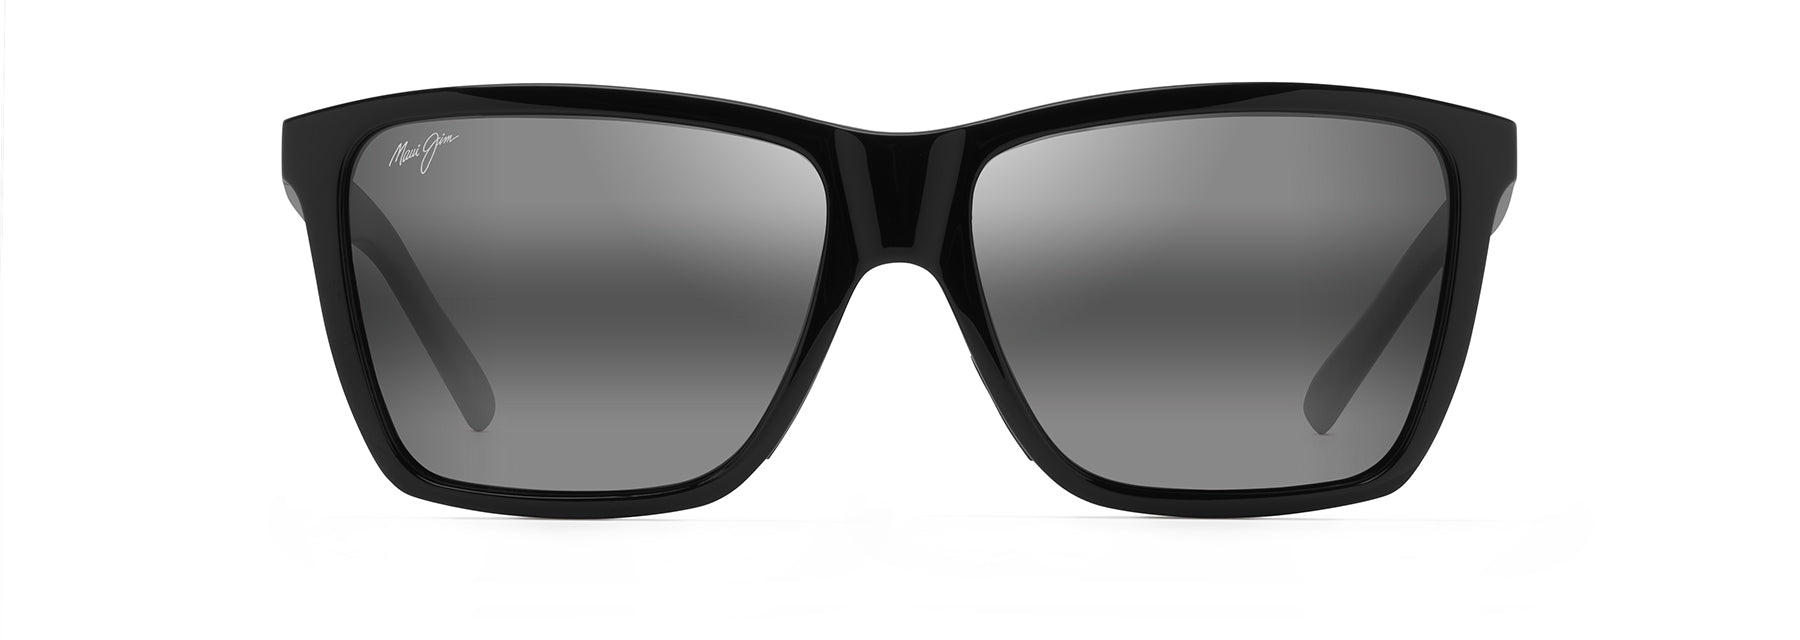 Maui Jim Cruzem Sunglasses